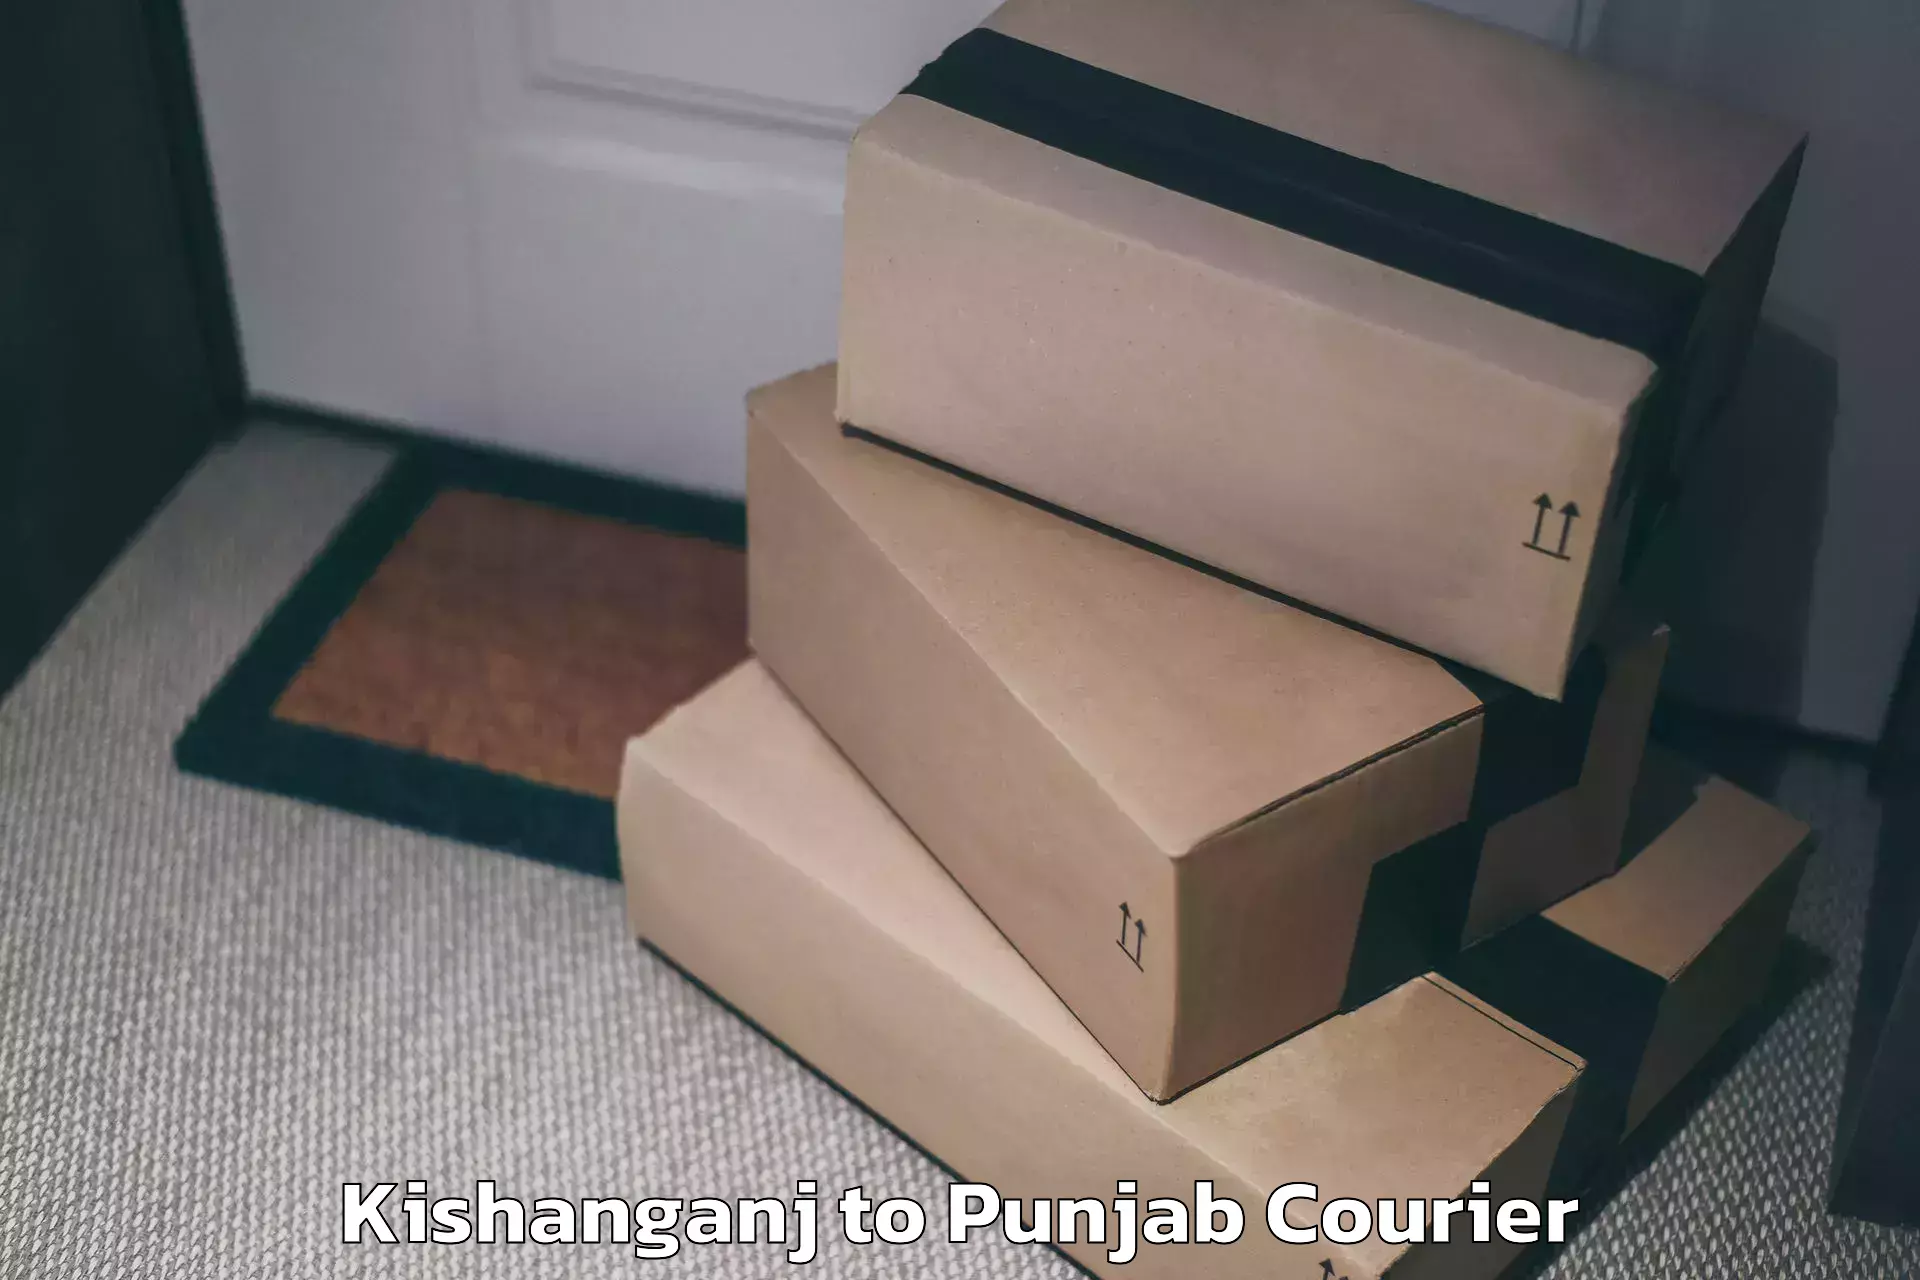 Automated luggage transport Kishanganj to Punjab